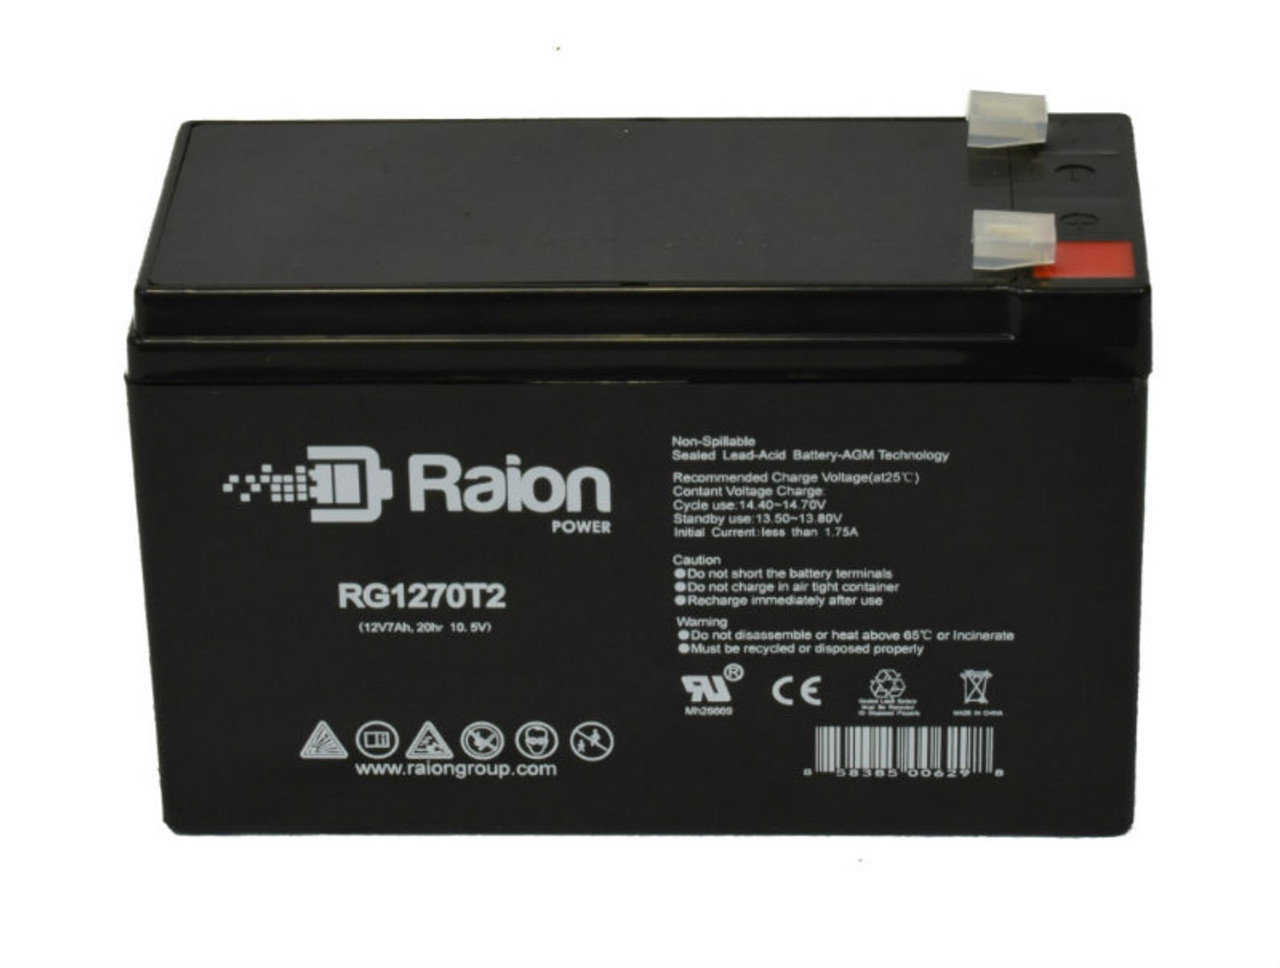 Raion Power RG1270T2 12V 7Ah Lead Acid Battery for Handicare 2000 Outdoor Stairlift